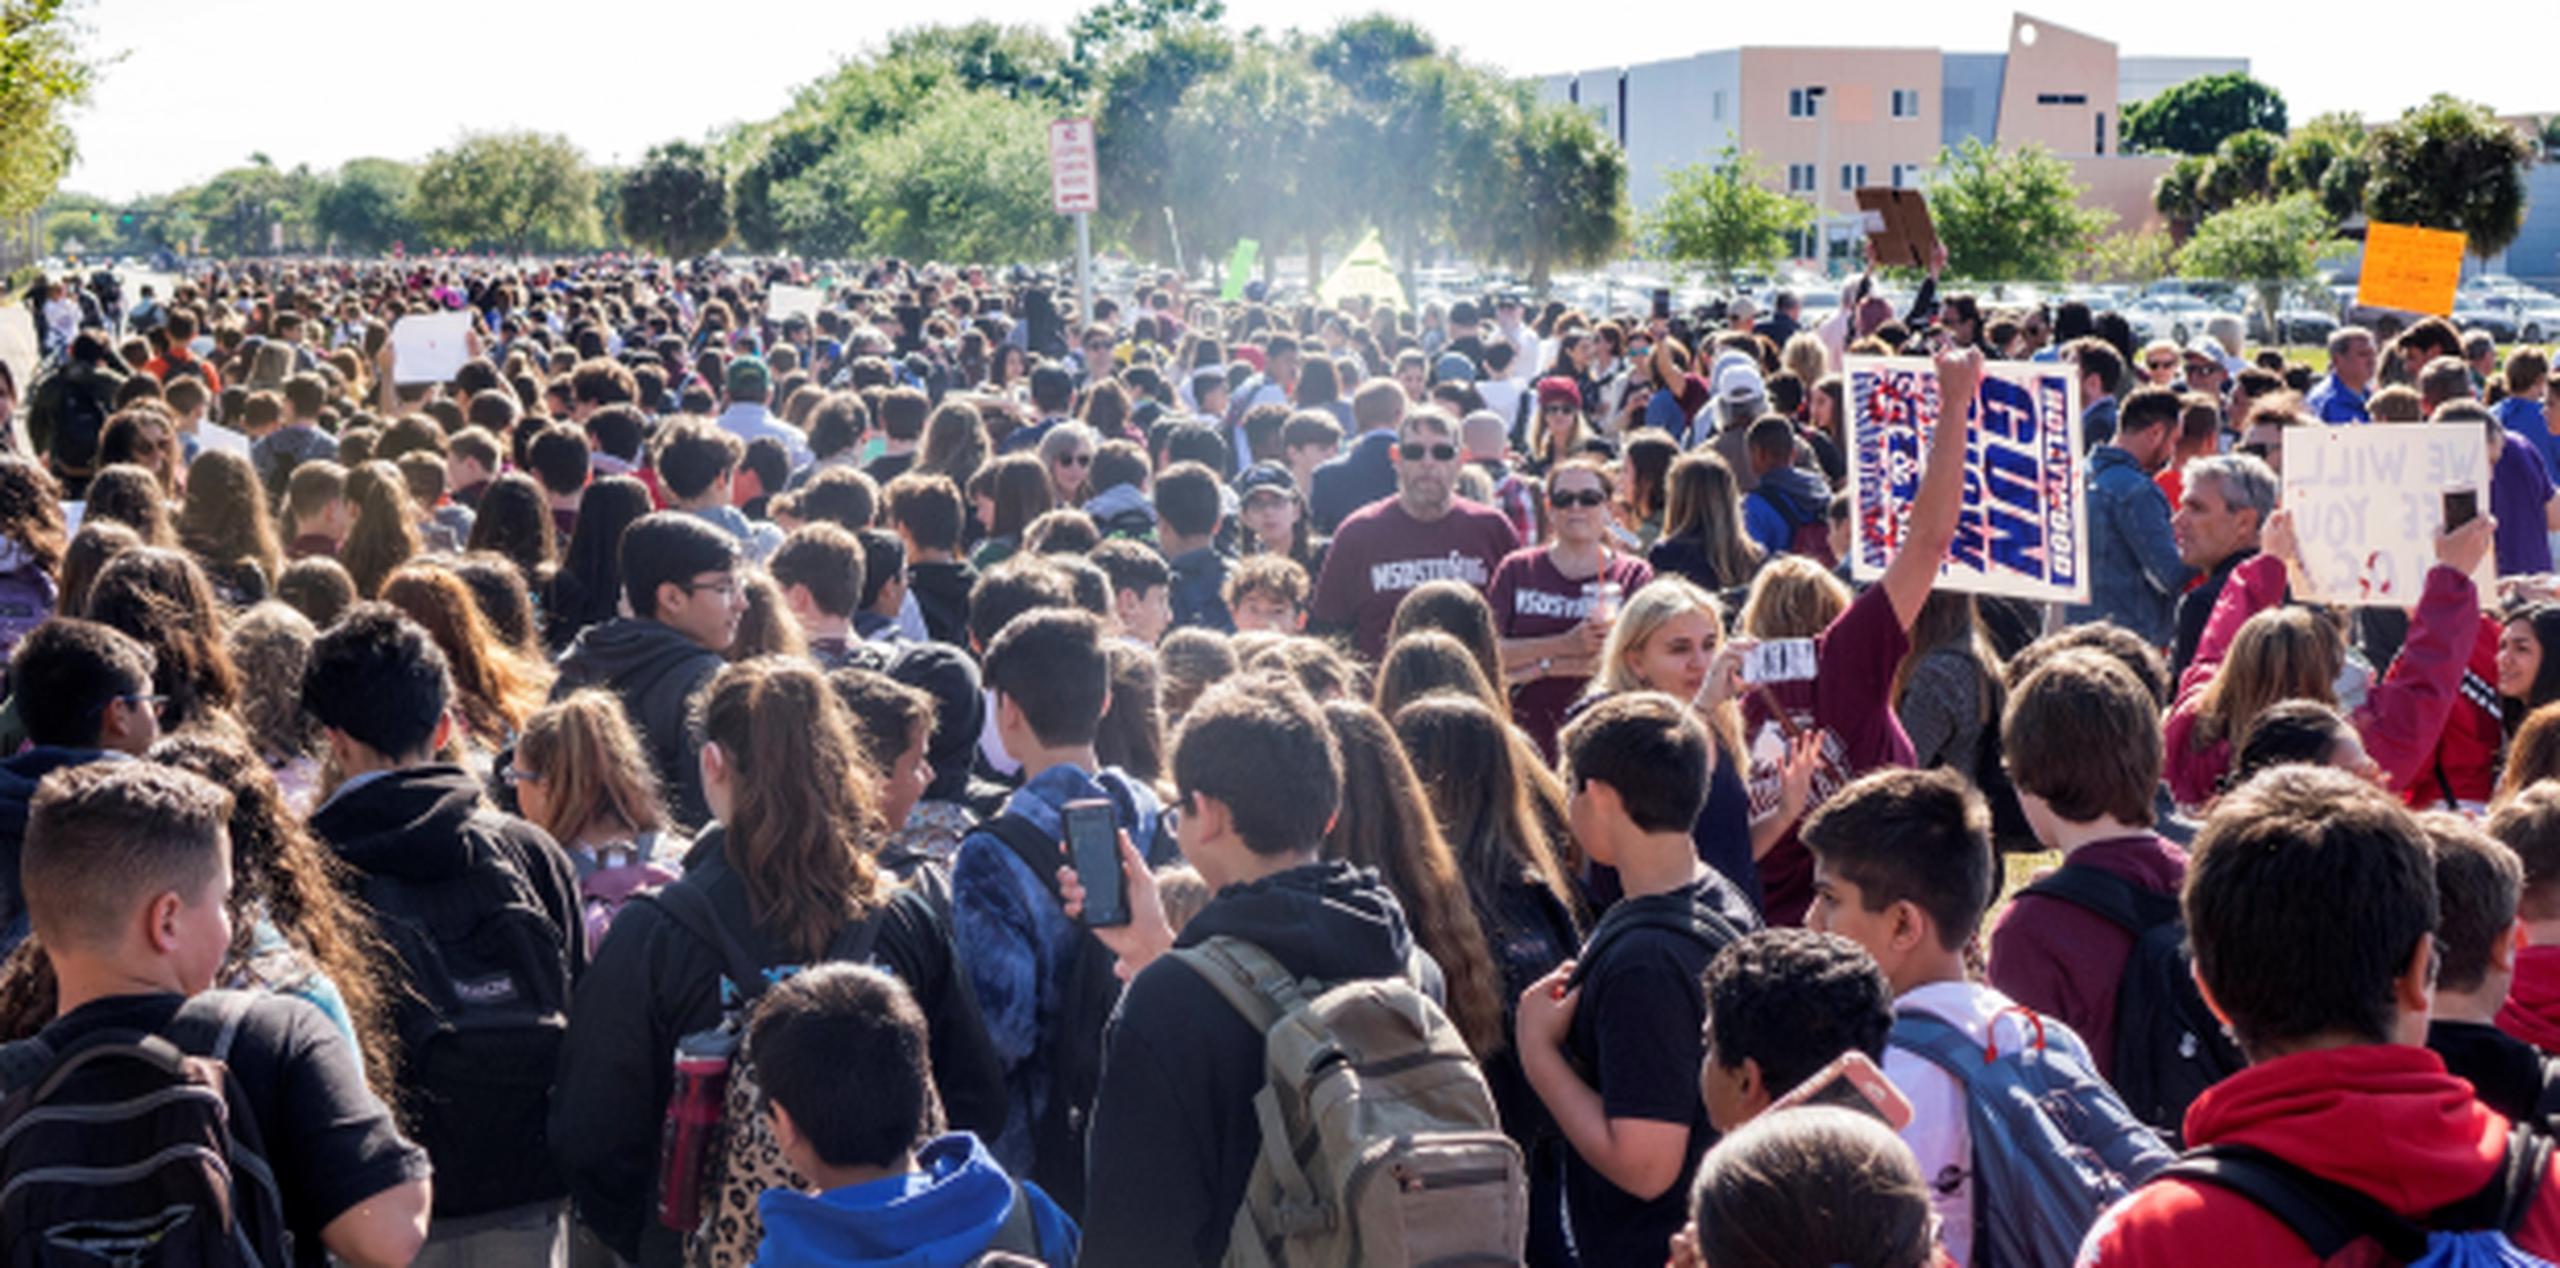 El pasado 14 de marzo, estudiantes del instituto Stoneman Douglas High School participaron en el paro realizado a nivel nacional para protestar contra la violencia por armas de fuego, en Parkland, Florida. (Archivo)